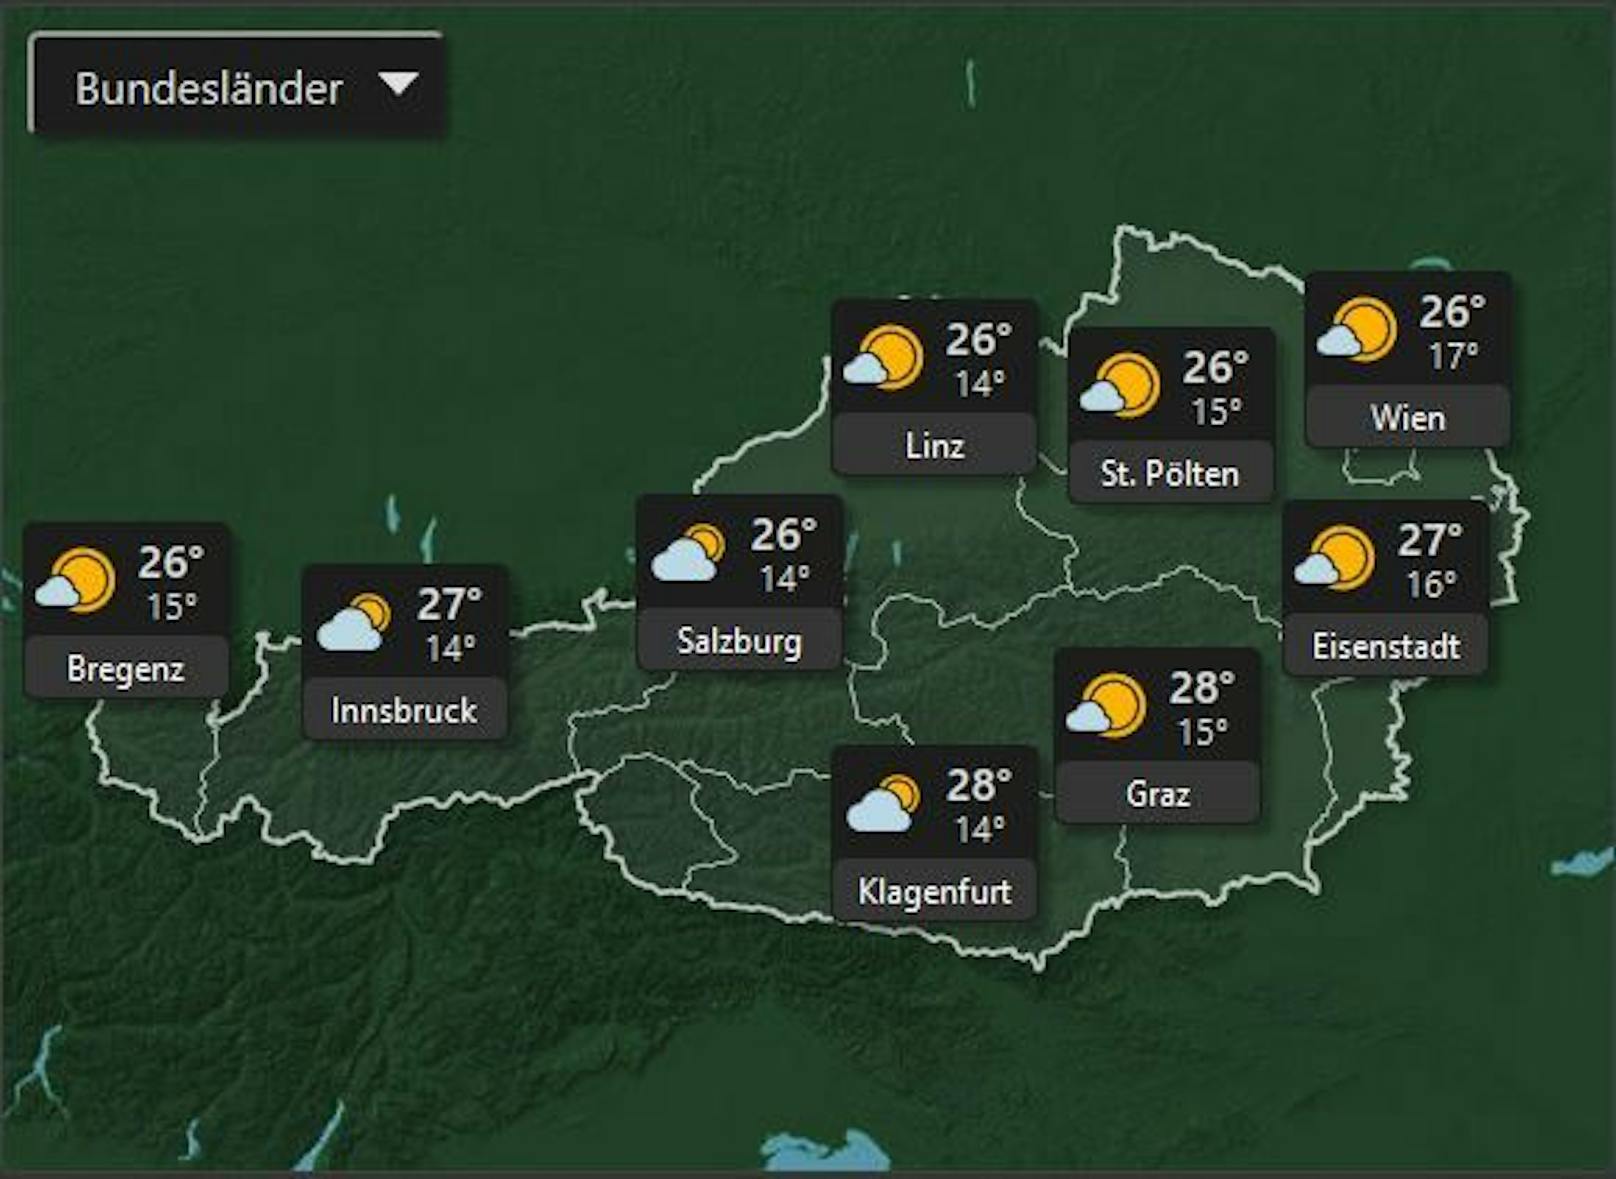 Am Freitag dem 8. Juli wird es passend zum Wochenende in ganz Österreich sonnig mit Höchsttemperaturen von 28°.&nbsp;